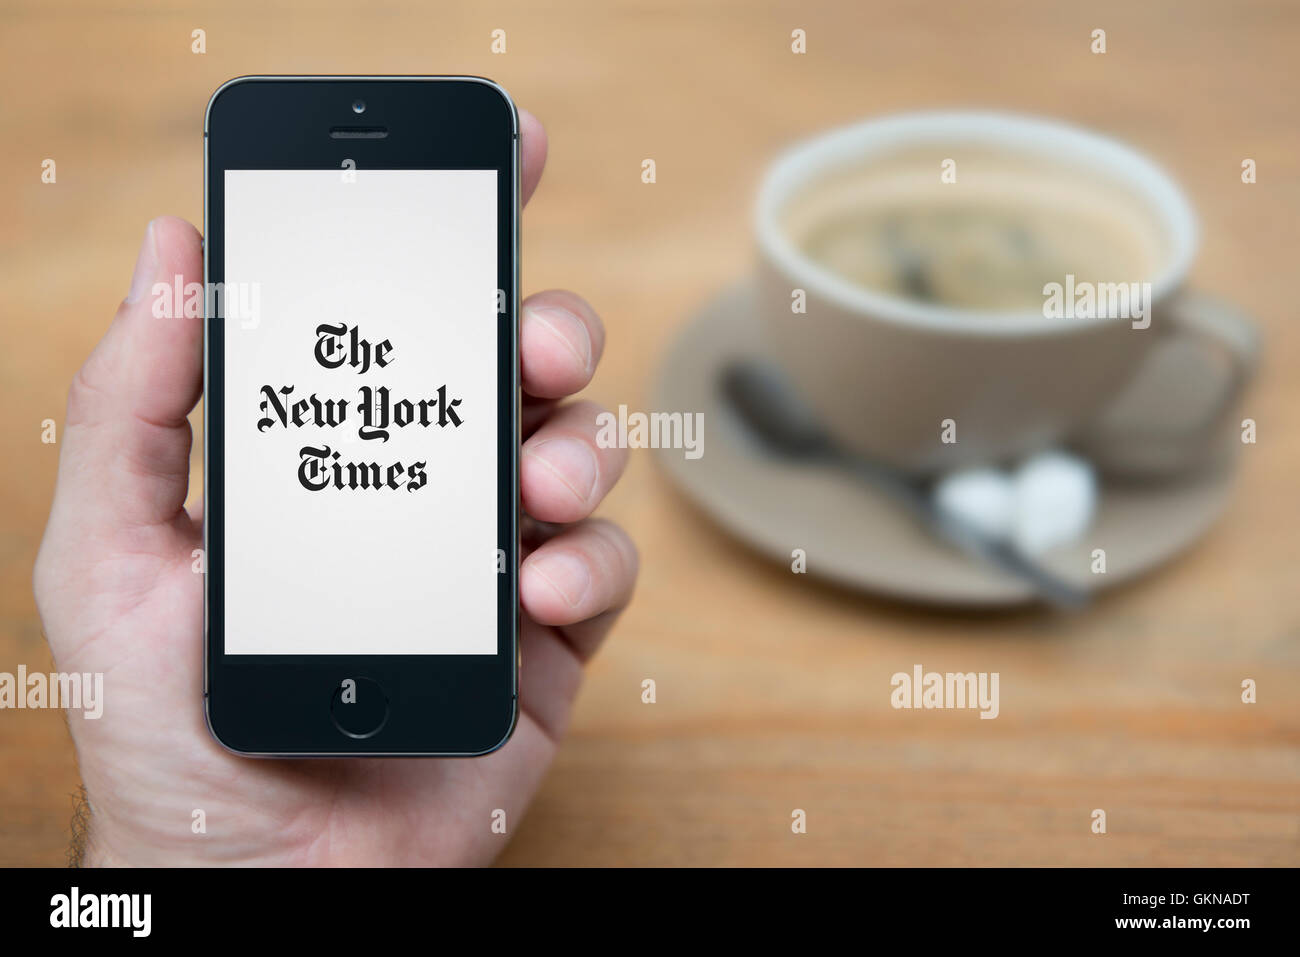 Un homme se penche sur son iPhone qui affiche le logo du New York Times, alors qu'assis avec une tasse de café (usage éditorial uniquement). Banque D'Images